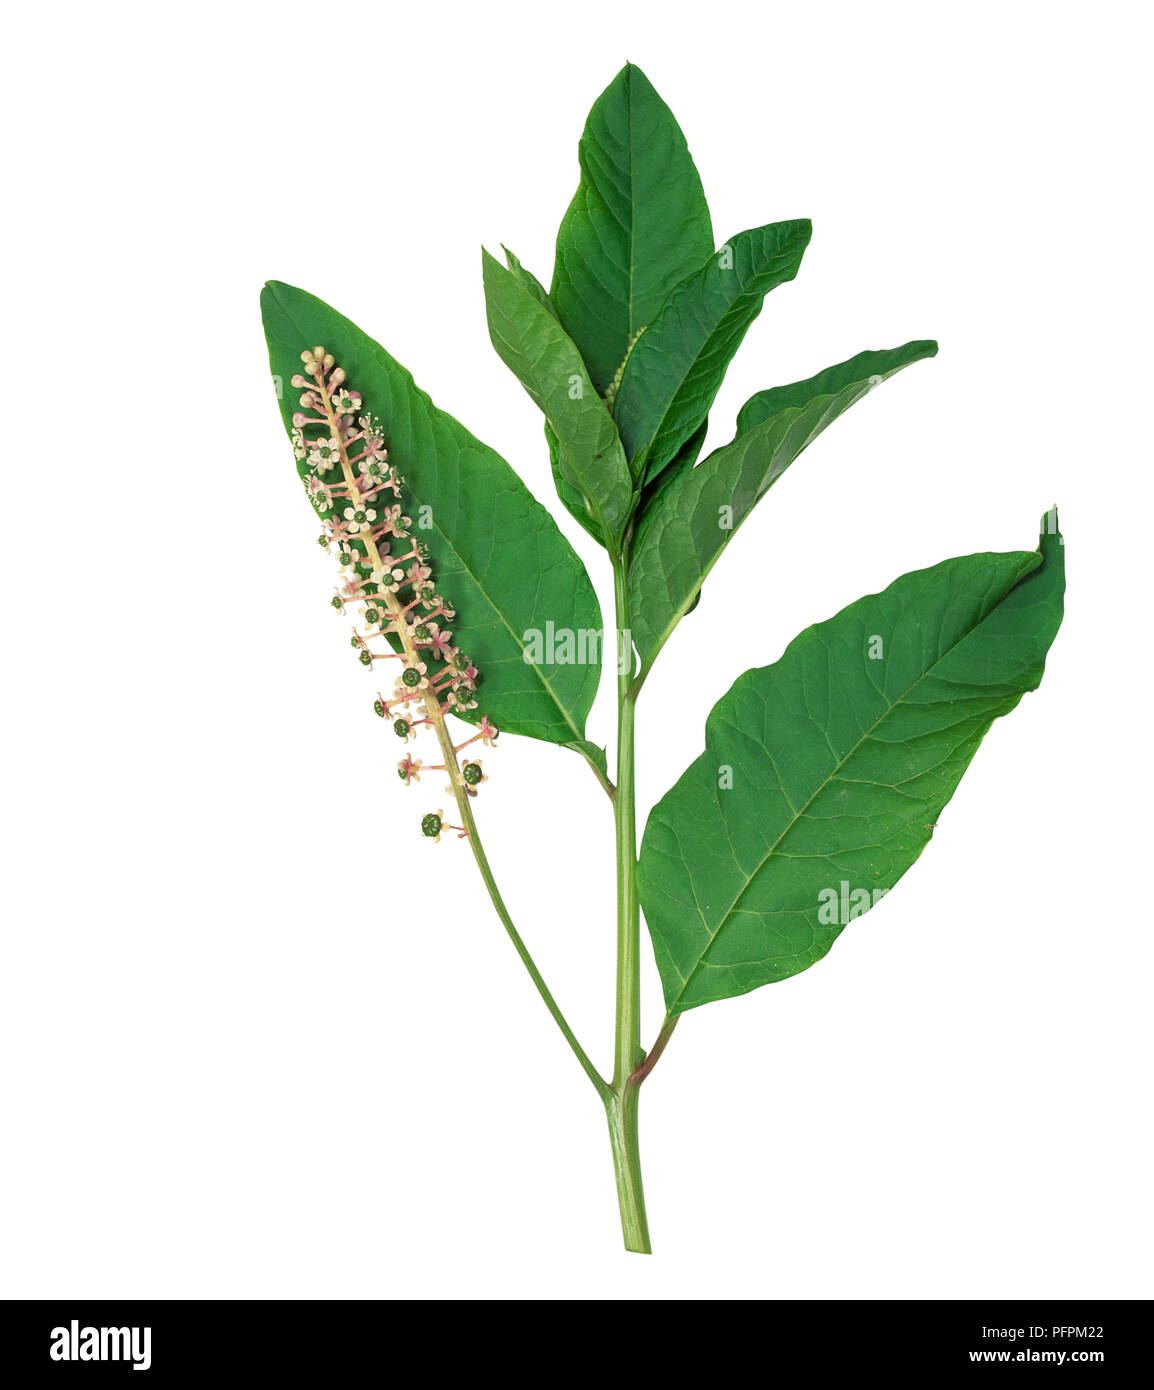 Phytolacca americana (American pokeweed), la fruttificazione peduncolo verde con i frutti acerbi e levetta con fiori in racemi e foglie Foto Stock